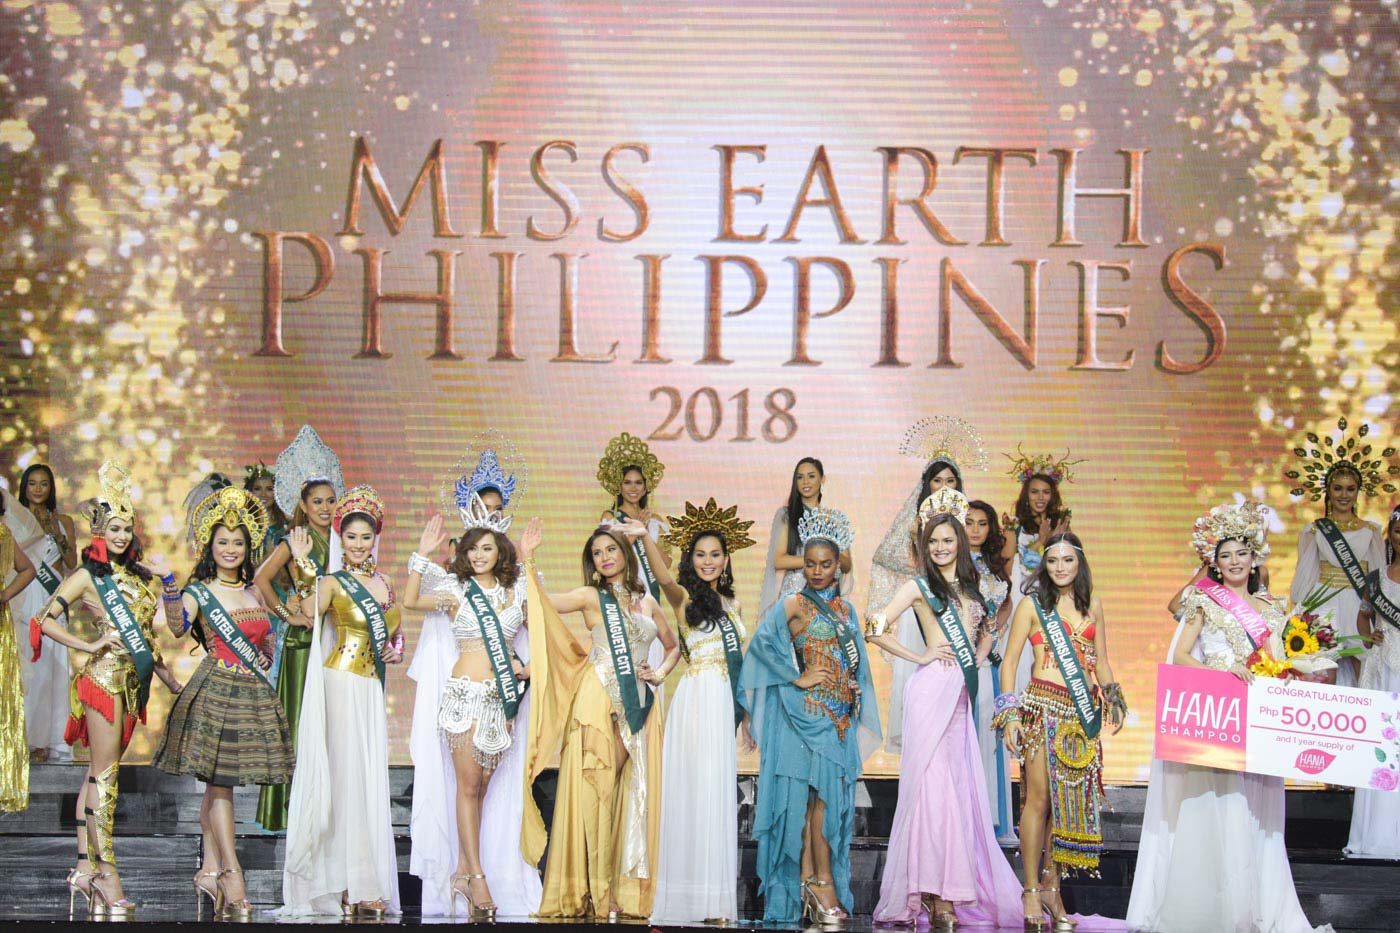 IN PHOTOS: Miss Earth Philippines 2018, ‘Dyosa ng Kalikasan’ segment